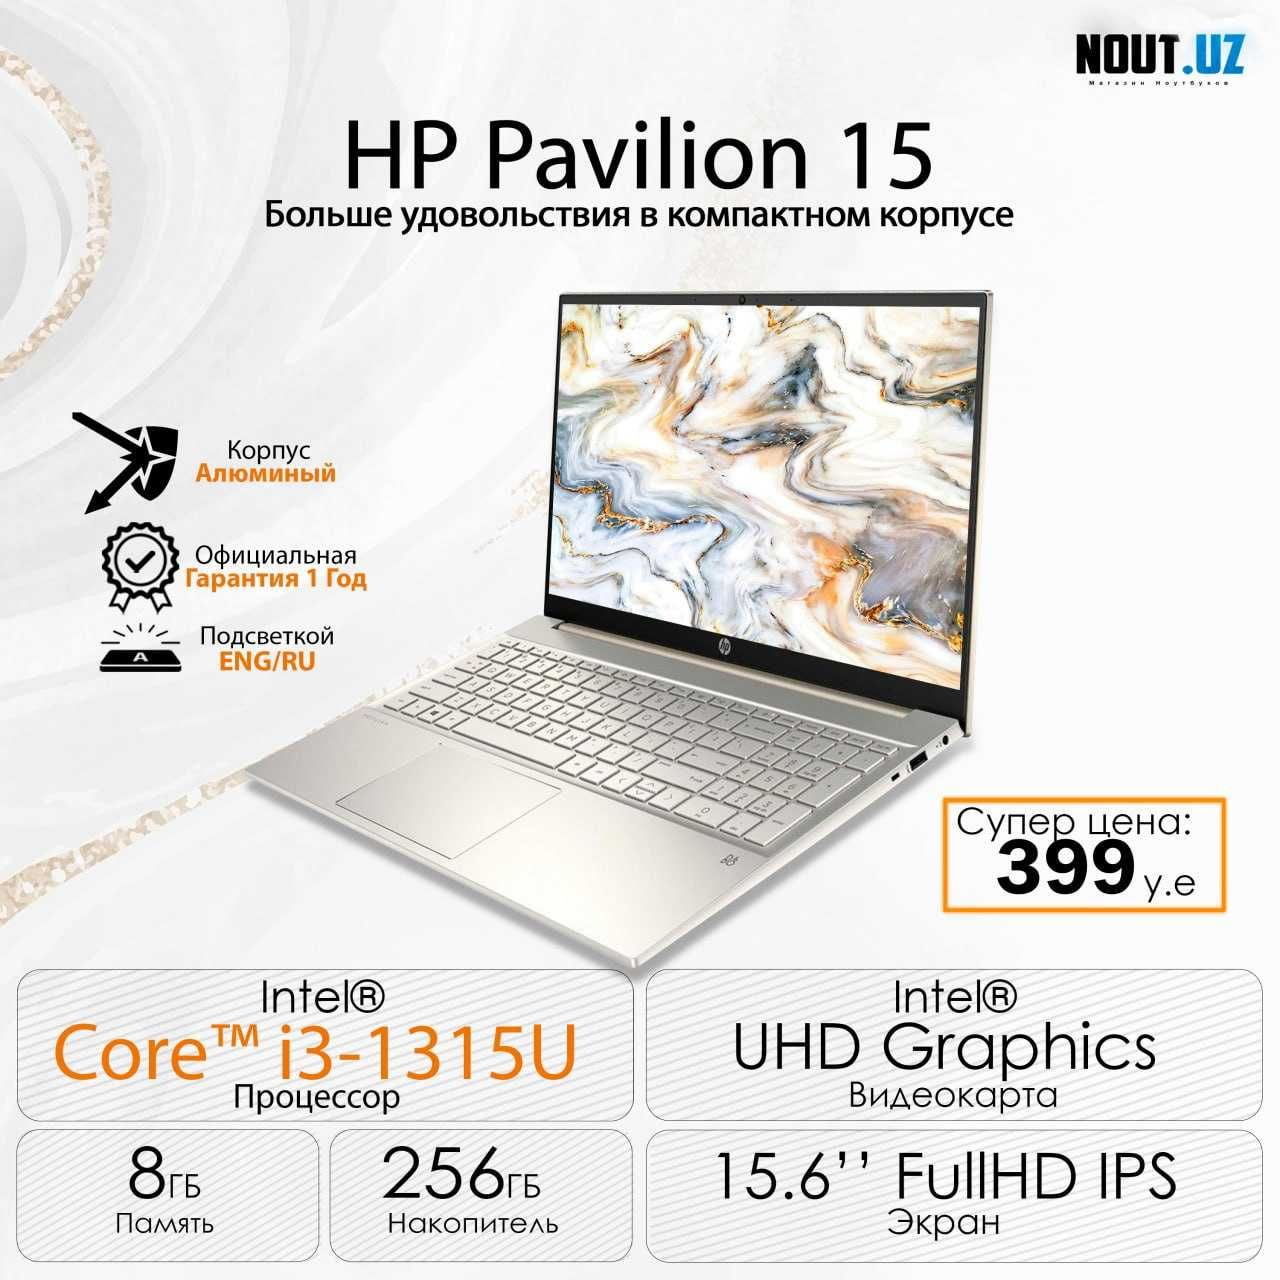 HP Pavilion 15 (_intel Core i3 1315U_Метал)_Магазин Nout.uz_Цена 399